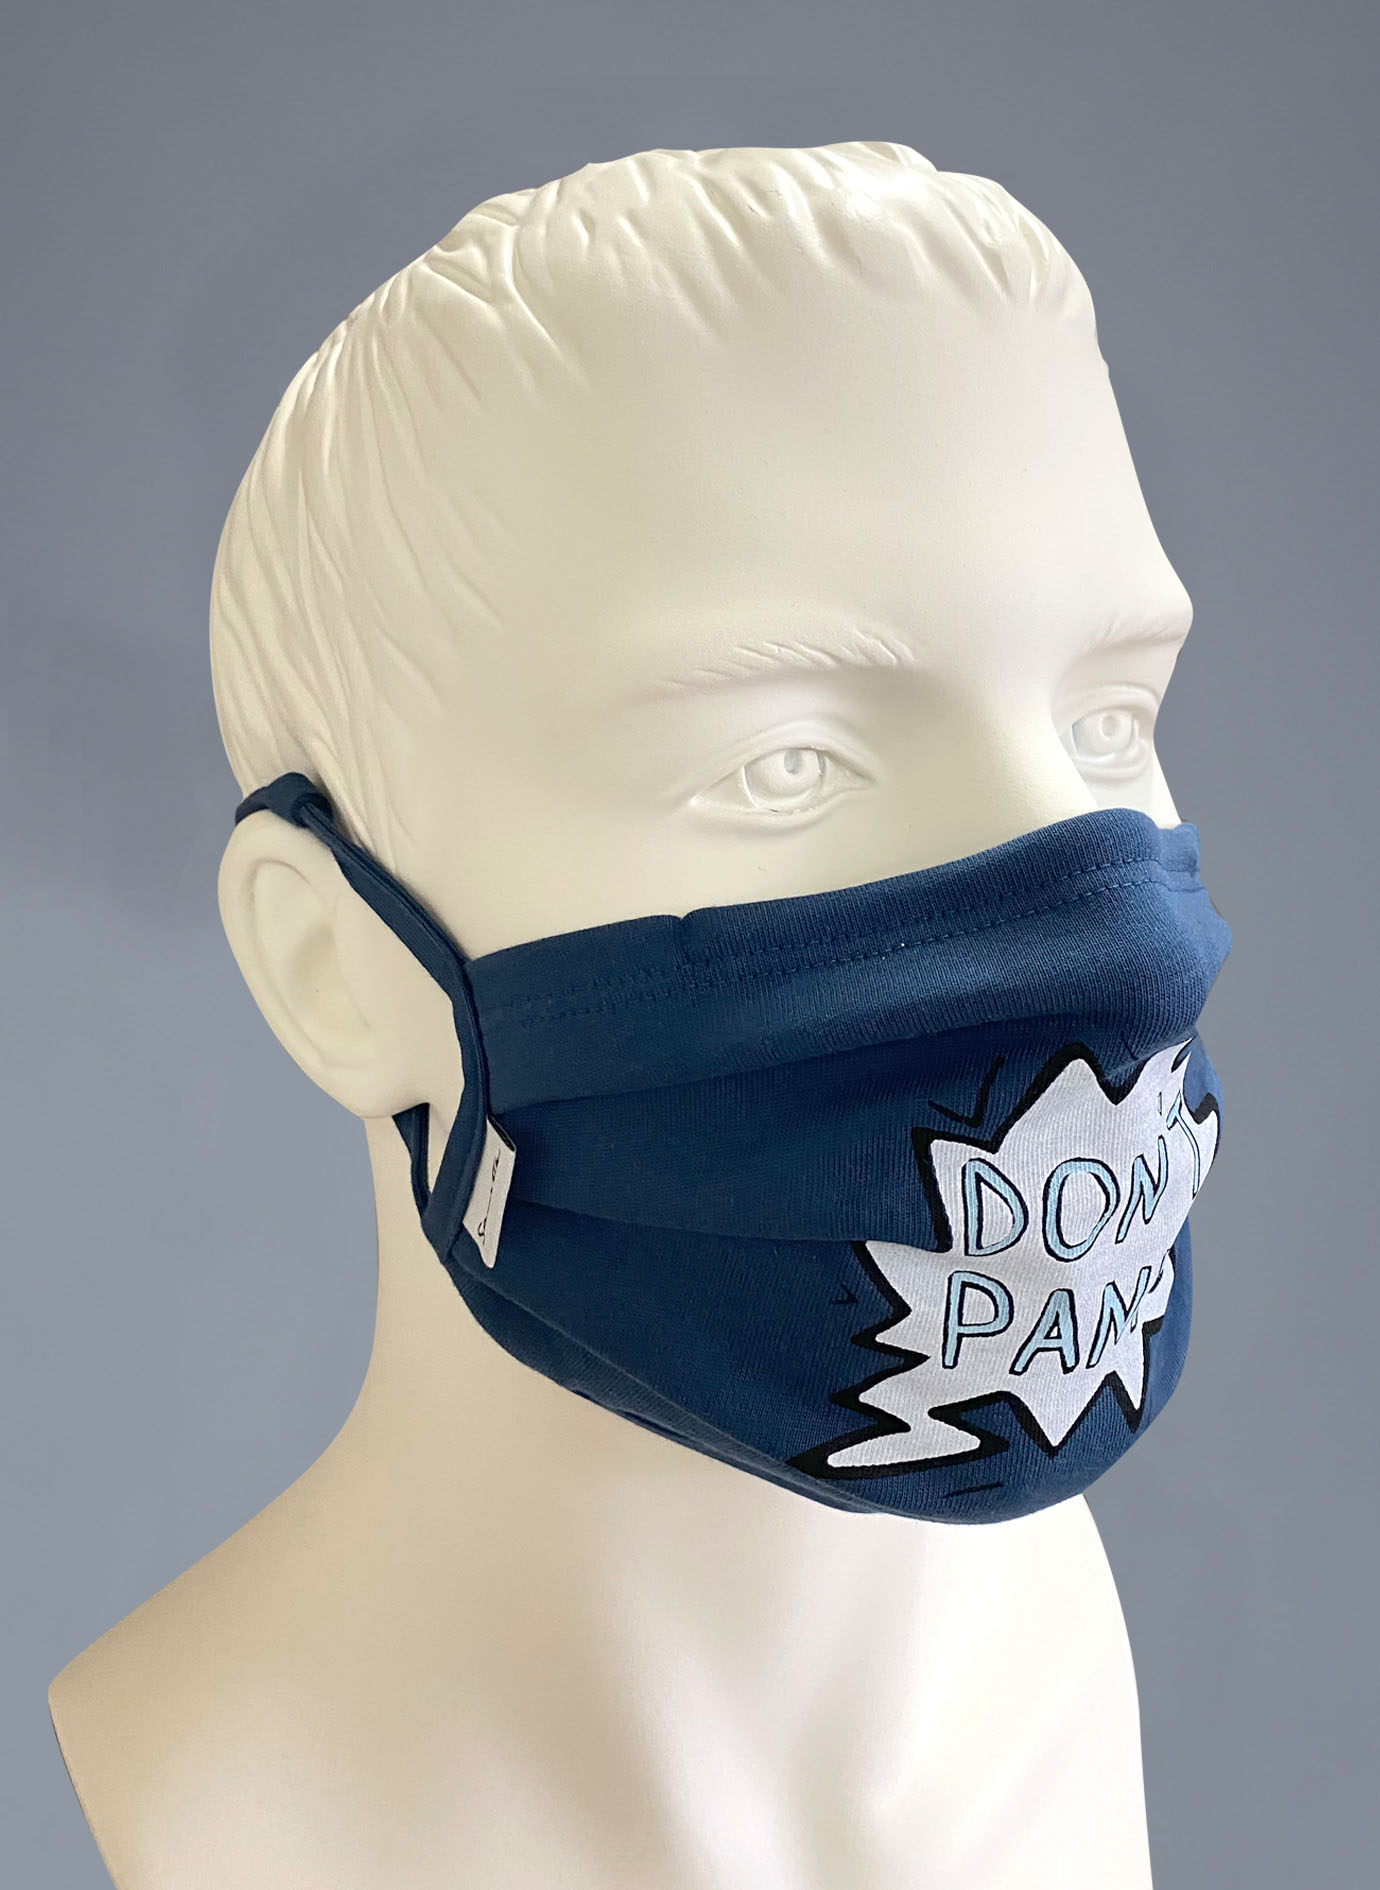 Wiederverwendbare Mund-Nasen-Maske Erwachsene Doppelpack Blau